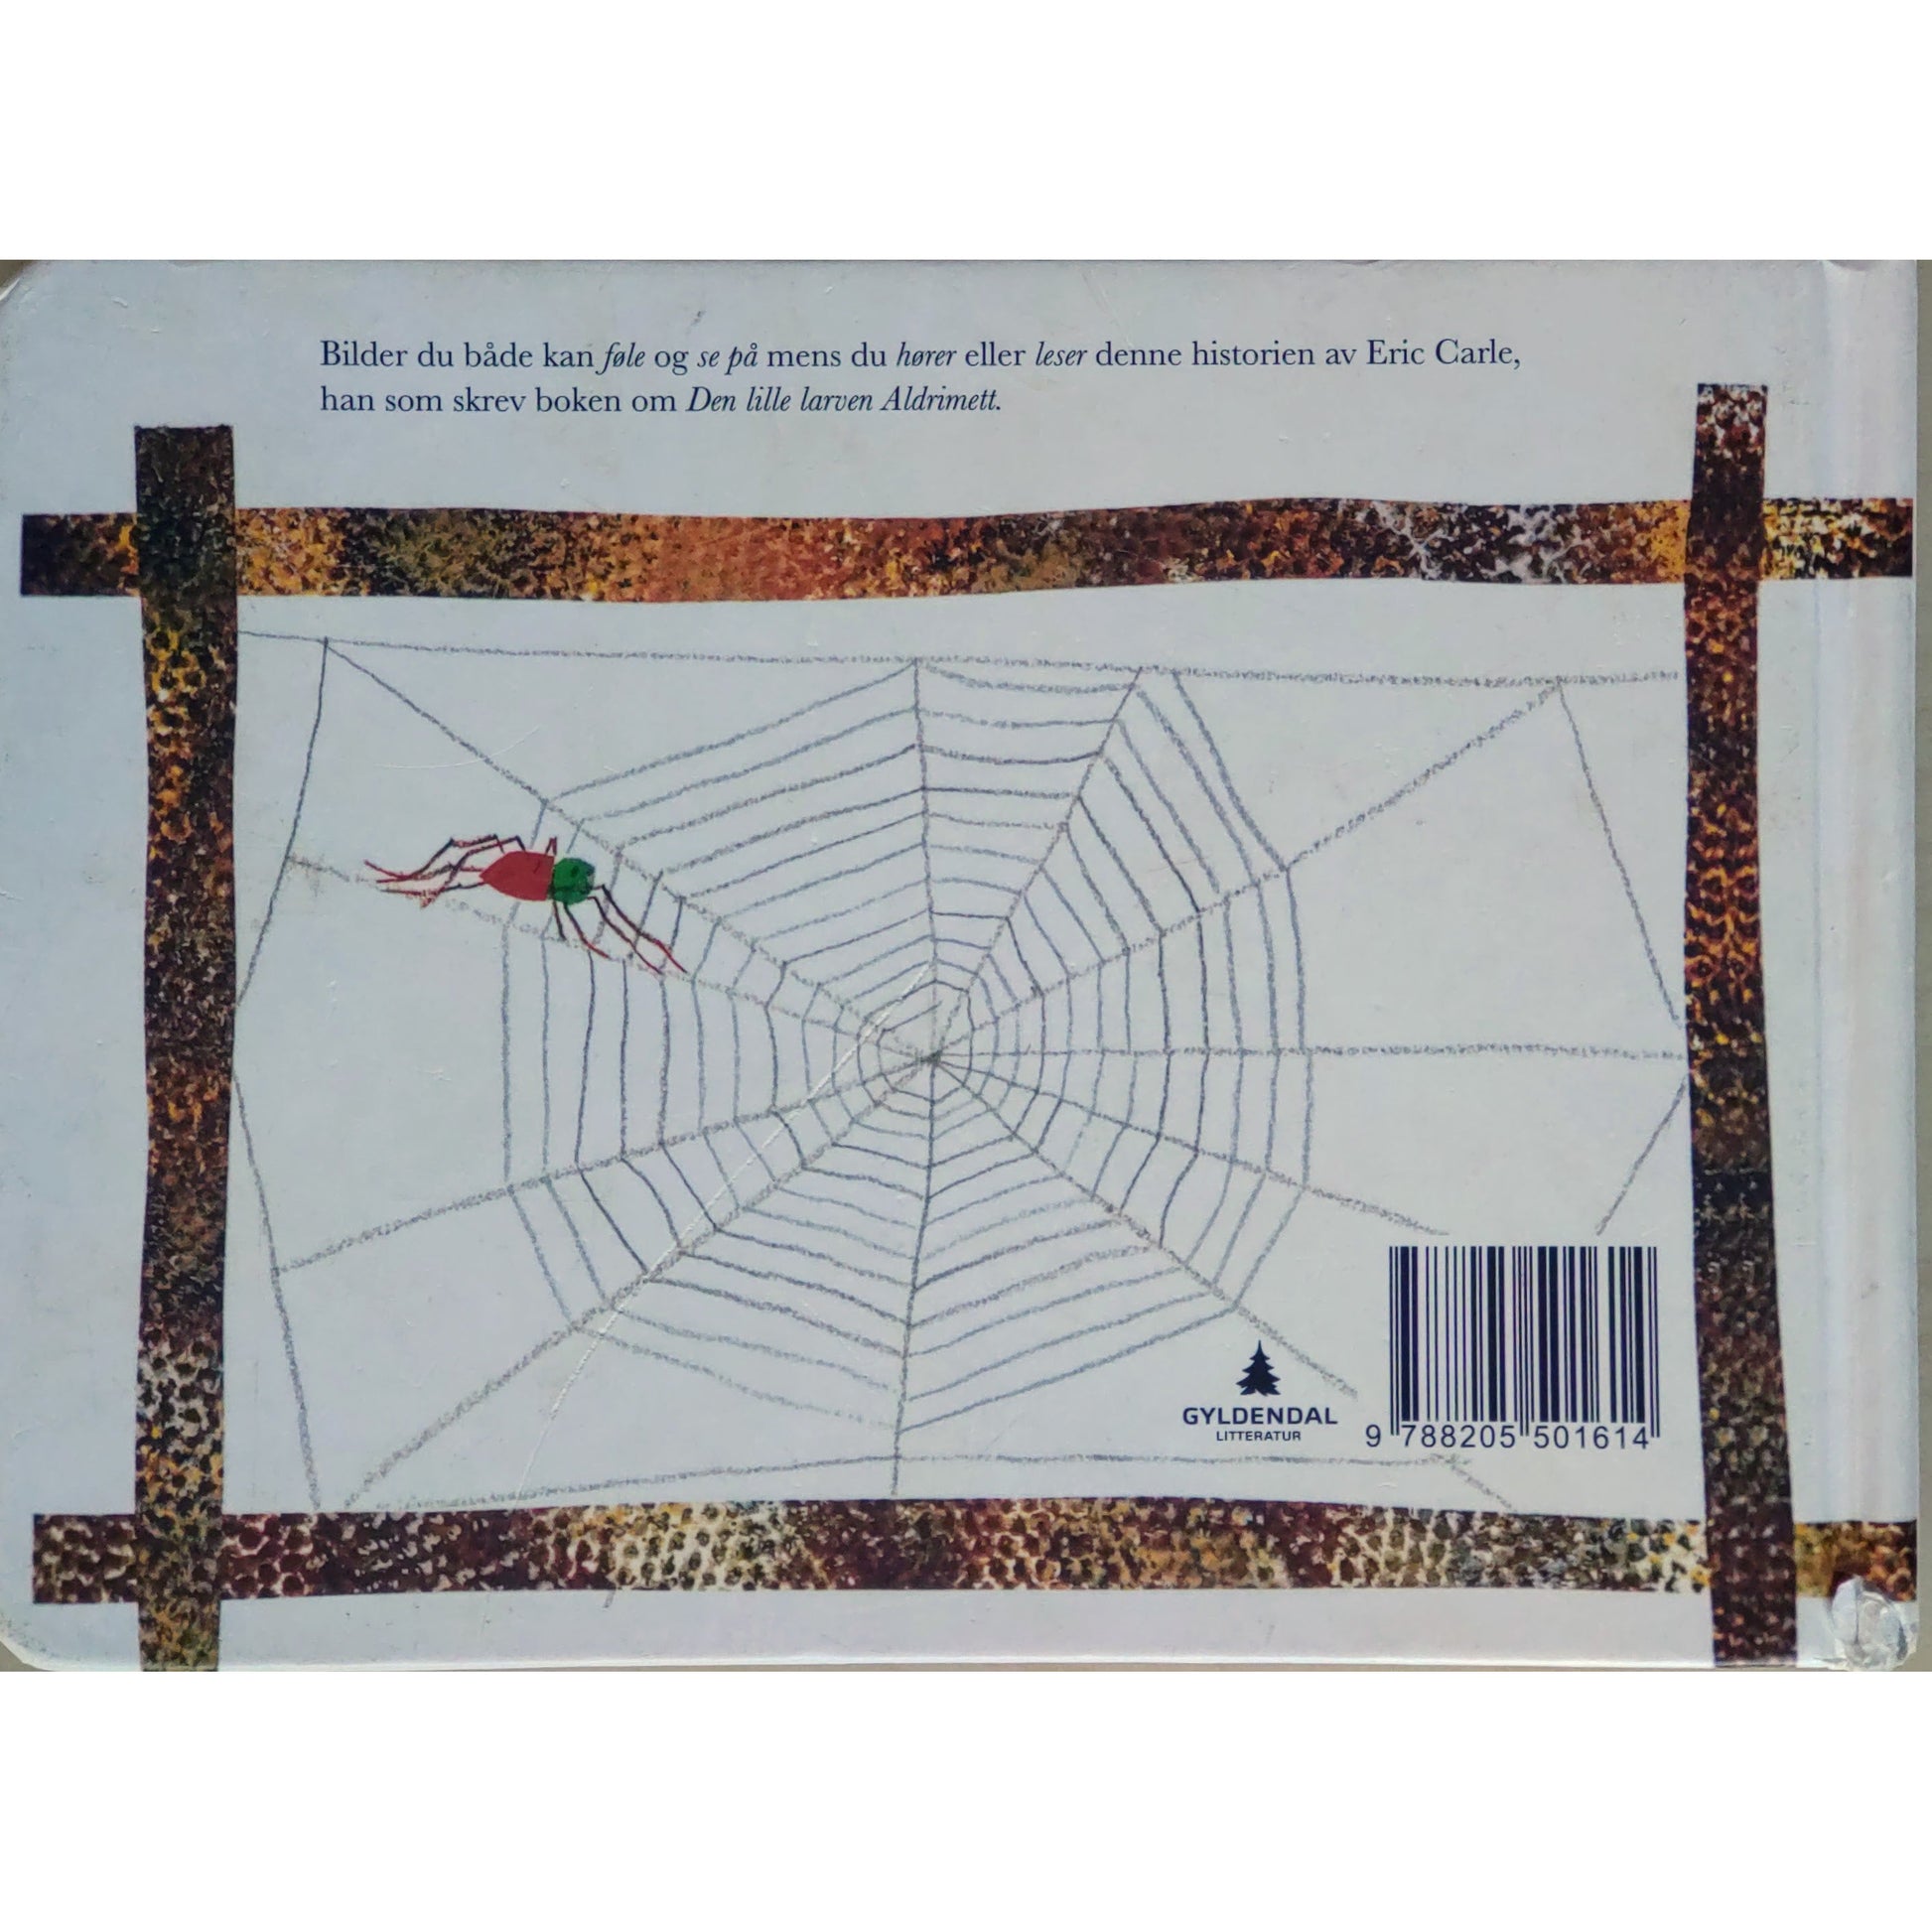  Den veldig travle edderkoppen, brukte bøker av Eric Carle